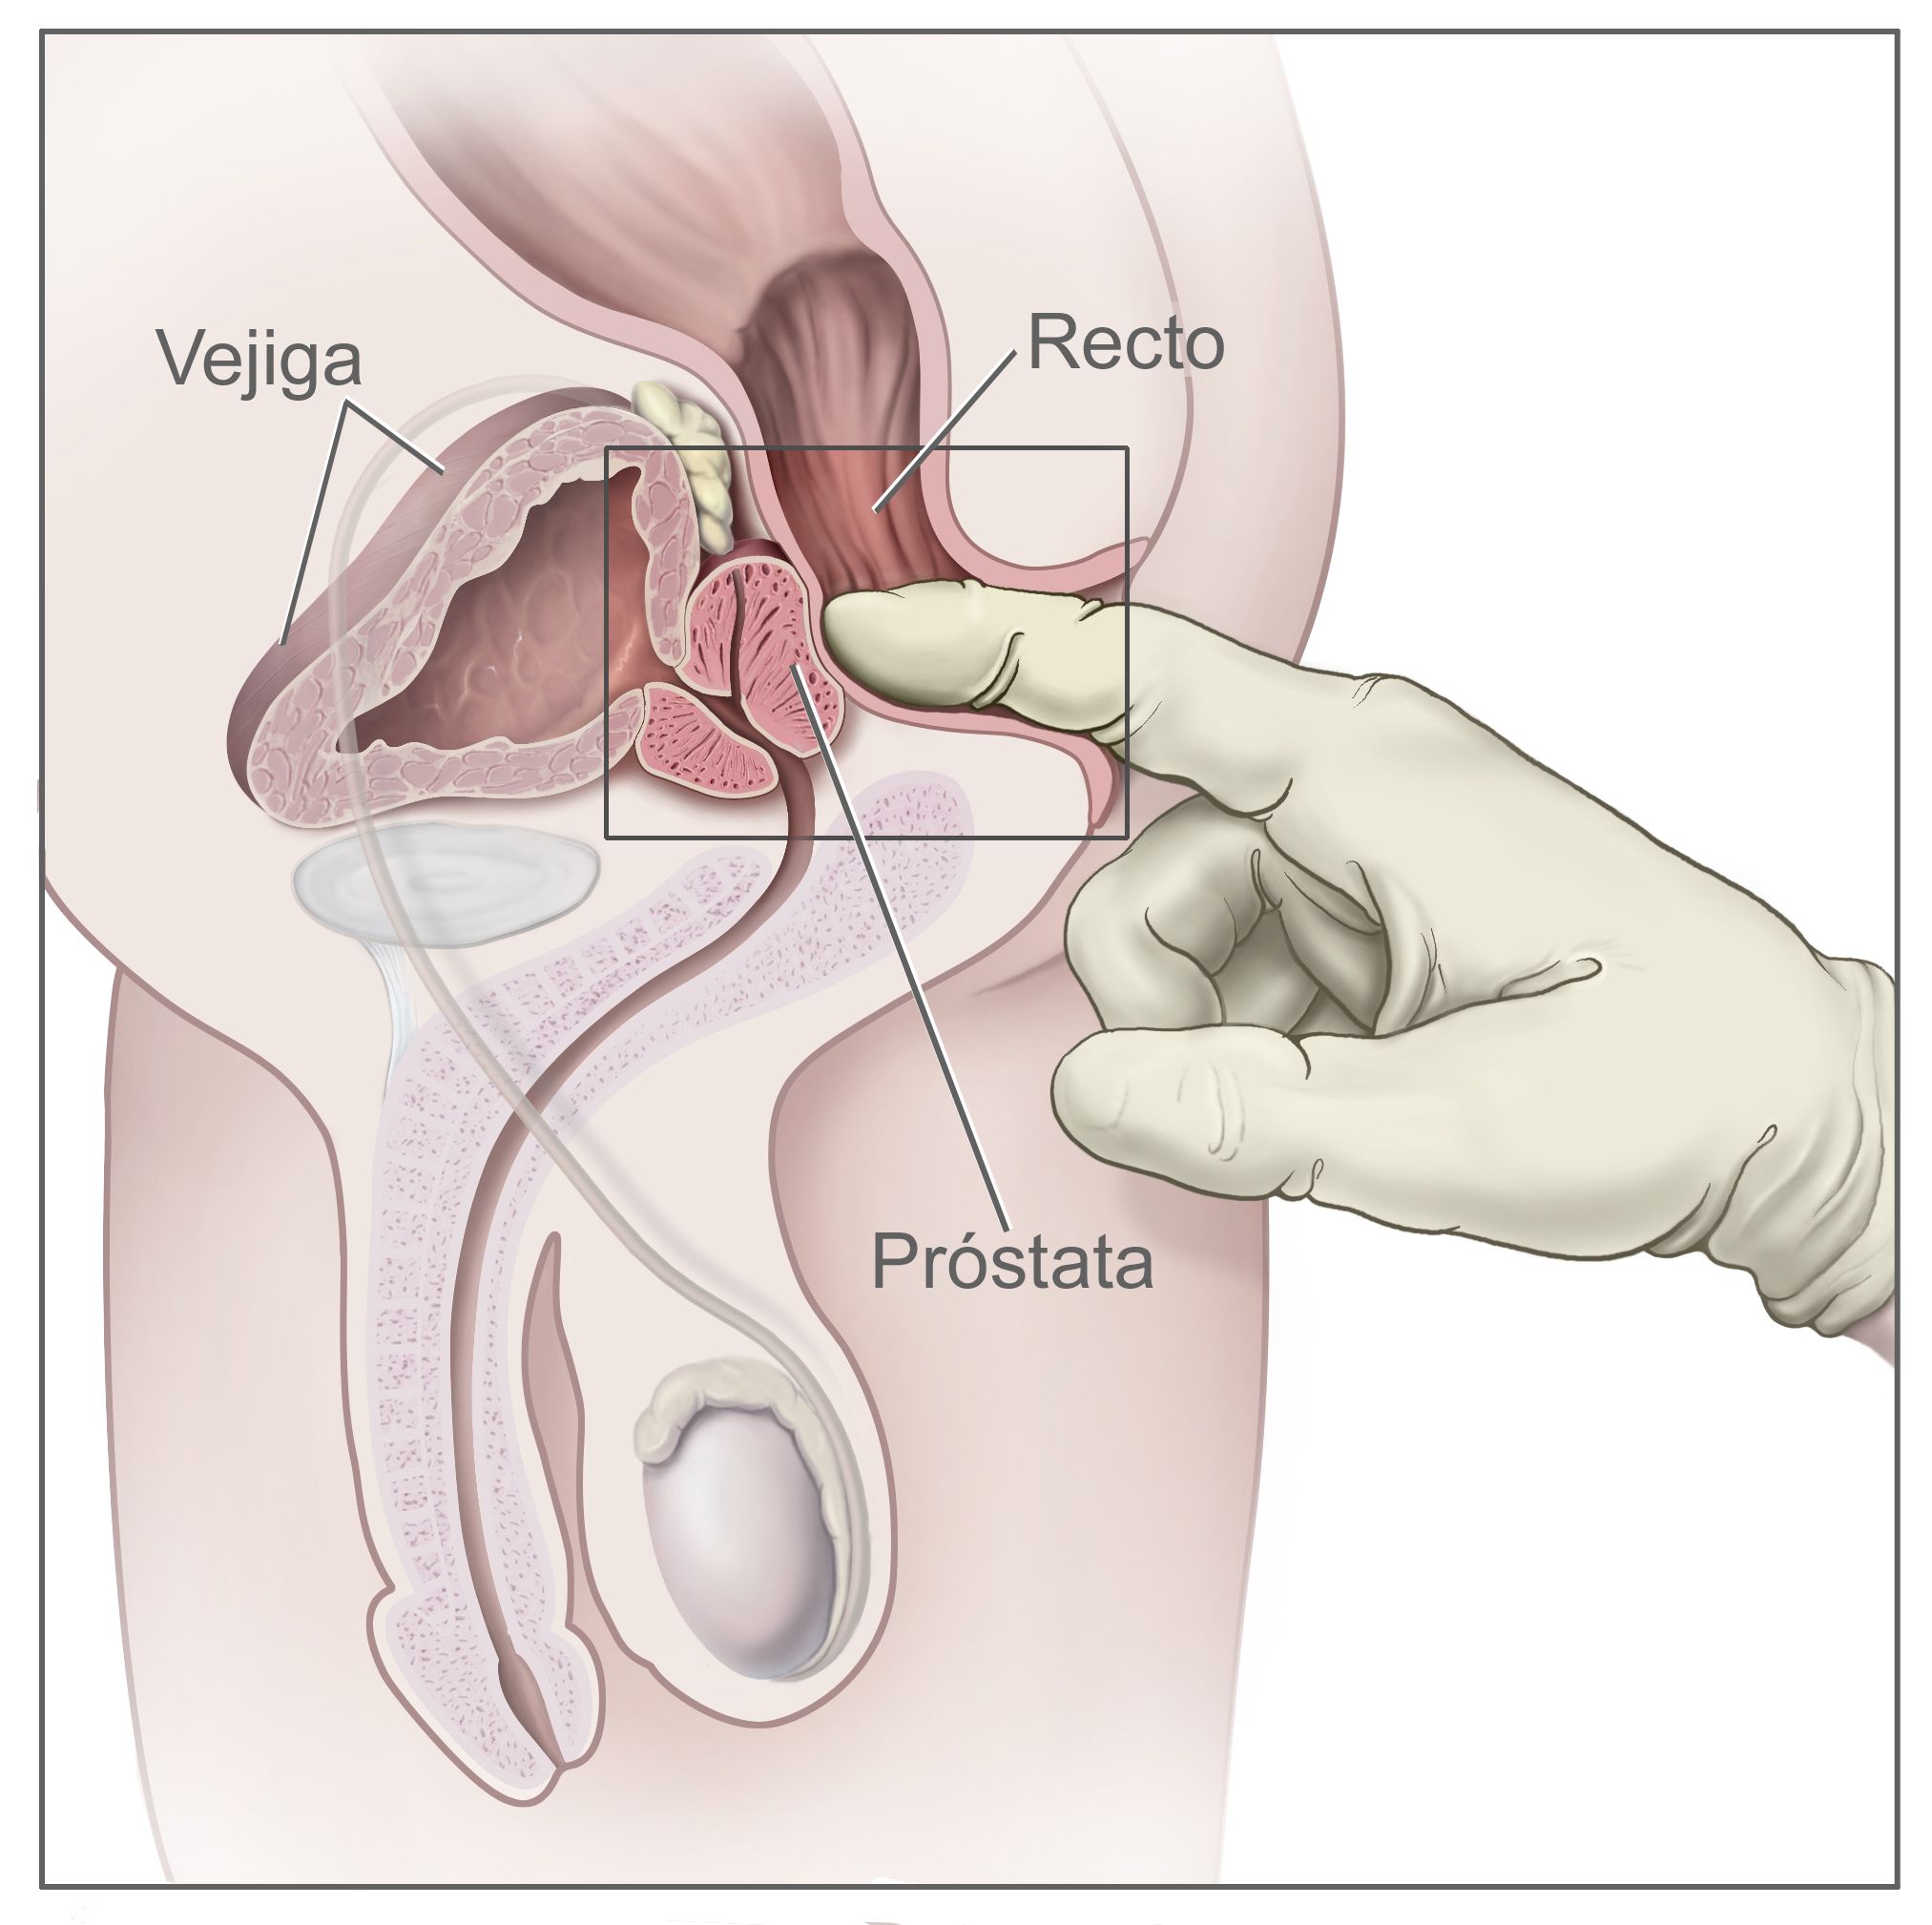 que medico hace el examen de prostata